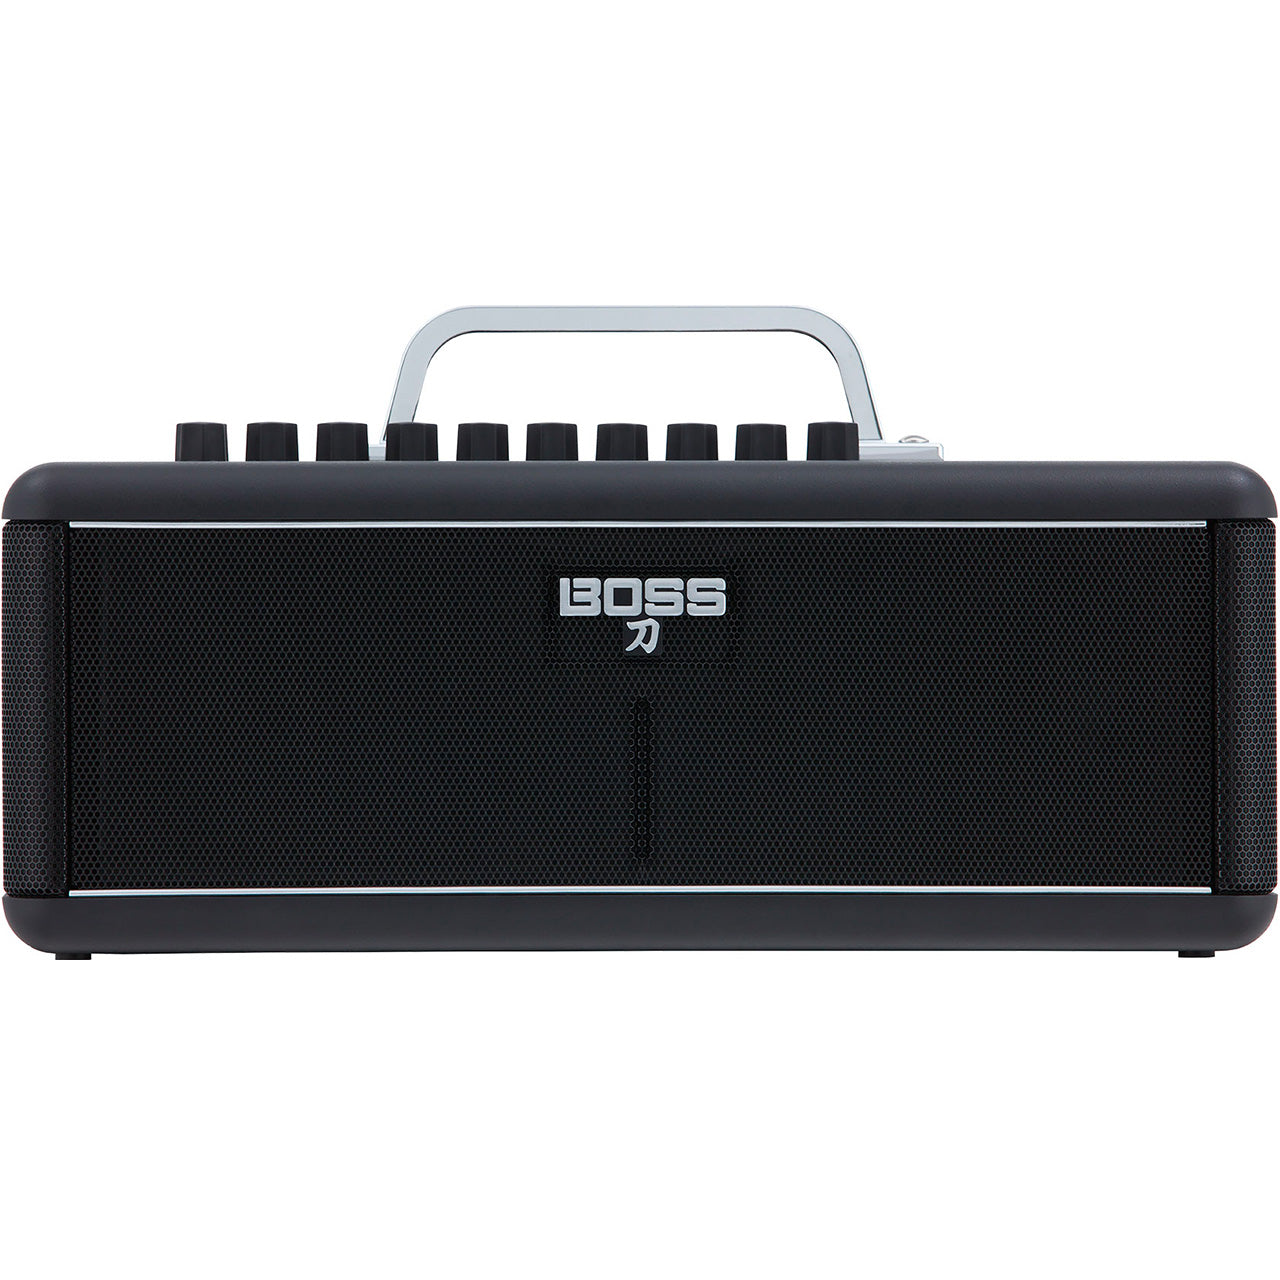 BOSS Katana Air Wireless Guitar Amplifier | For Sale | Replay 